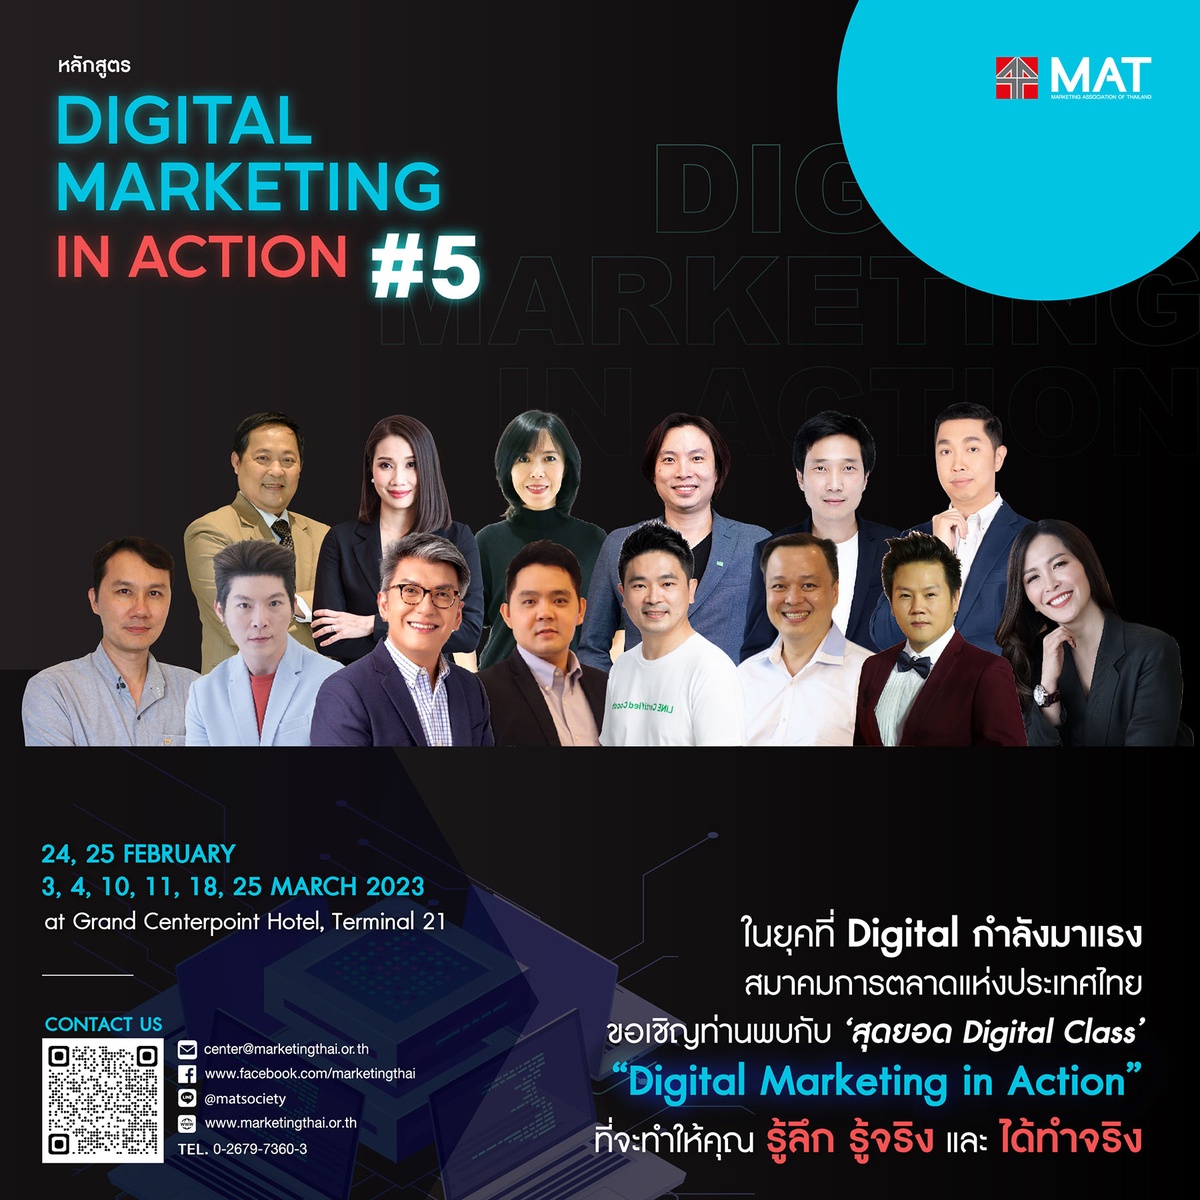 สมาคมการตลาดแห่งประเทศไทย ขอเชิญเข้าร่วมคอร์ส Digital Marketing In Action รุ่นที่ 5